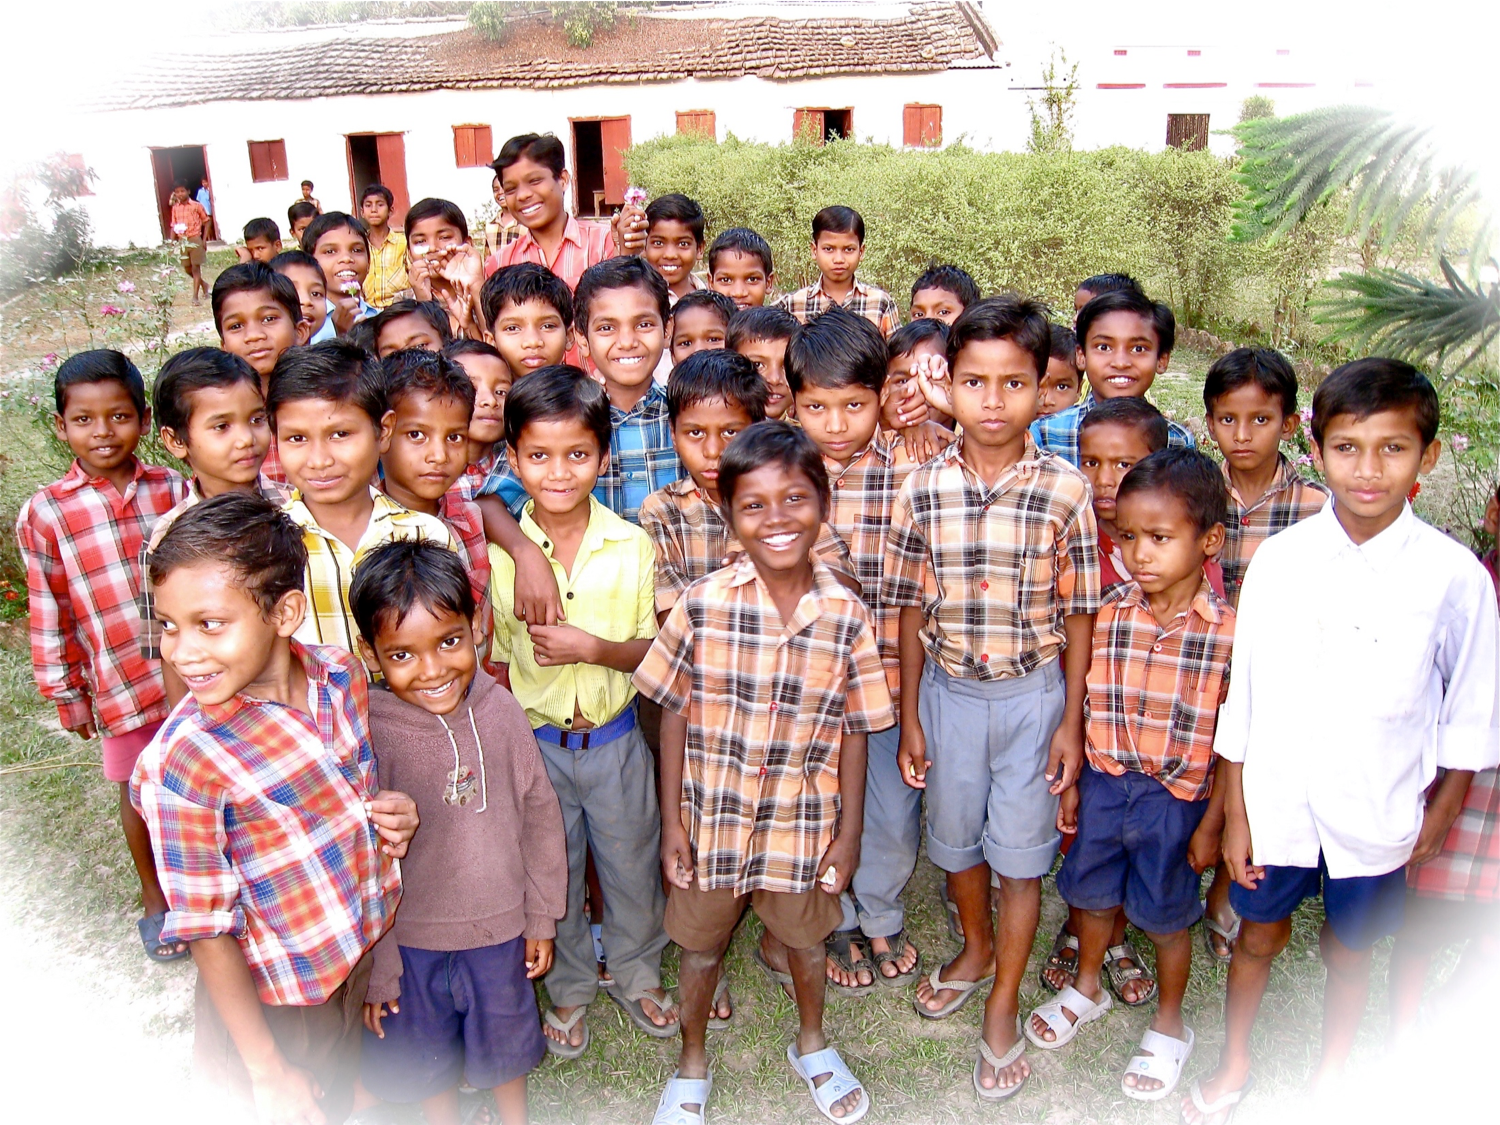 Soul Winning Mission - et misjonsprosjekt i India